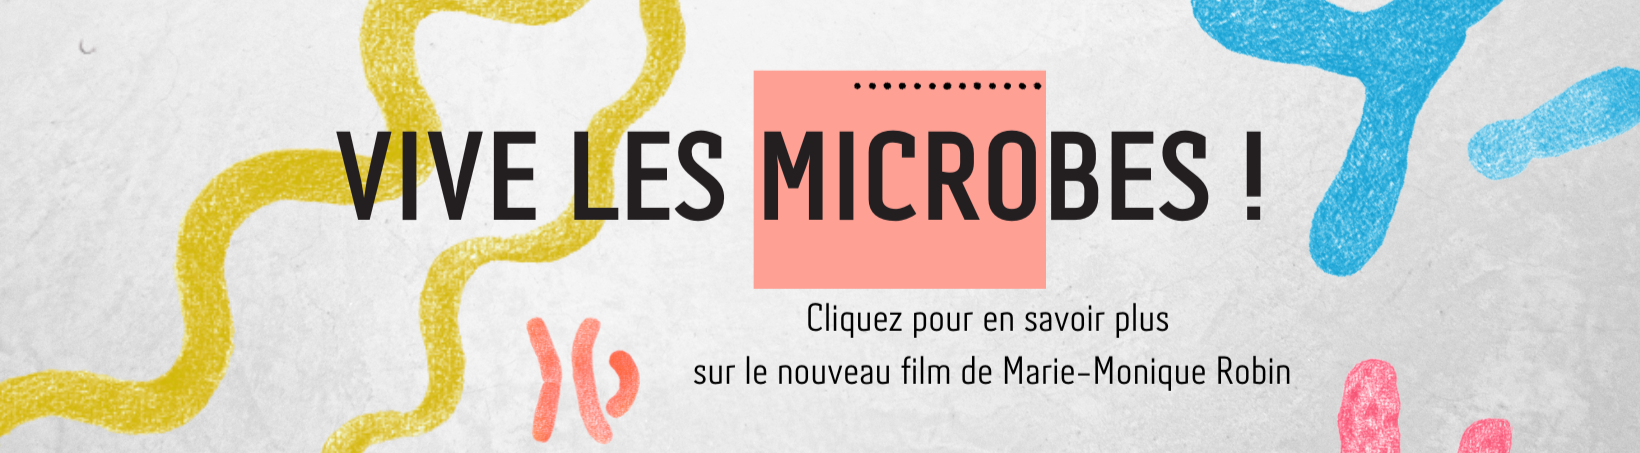 Vive les microbes! Cliquez pour en savoir plus sur le nouveau film de Marie-Monique Robin